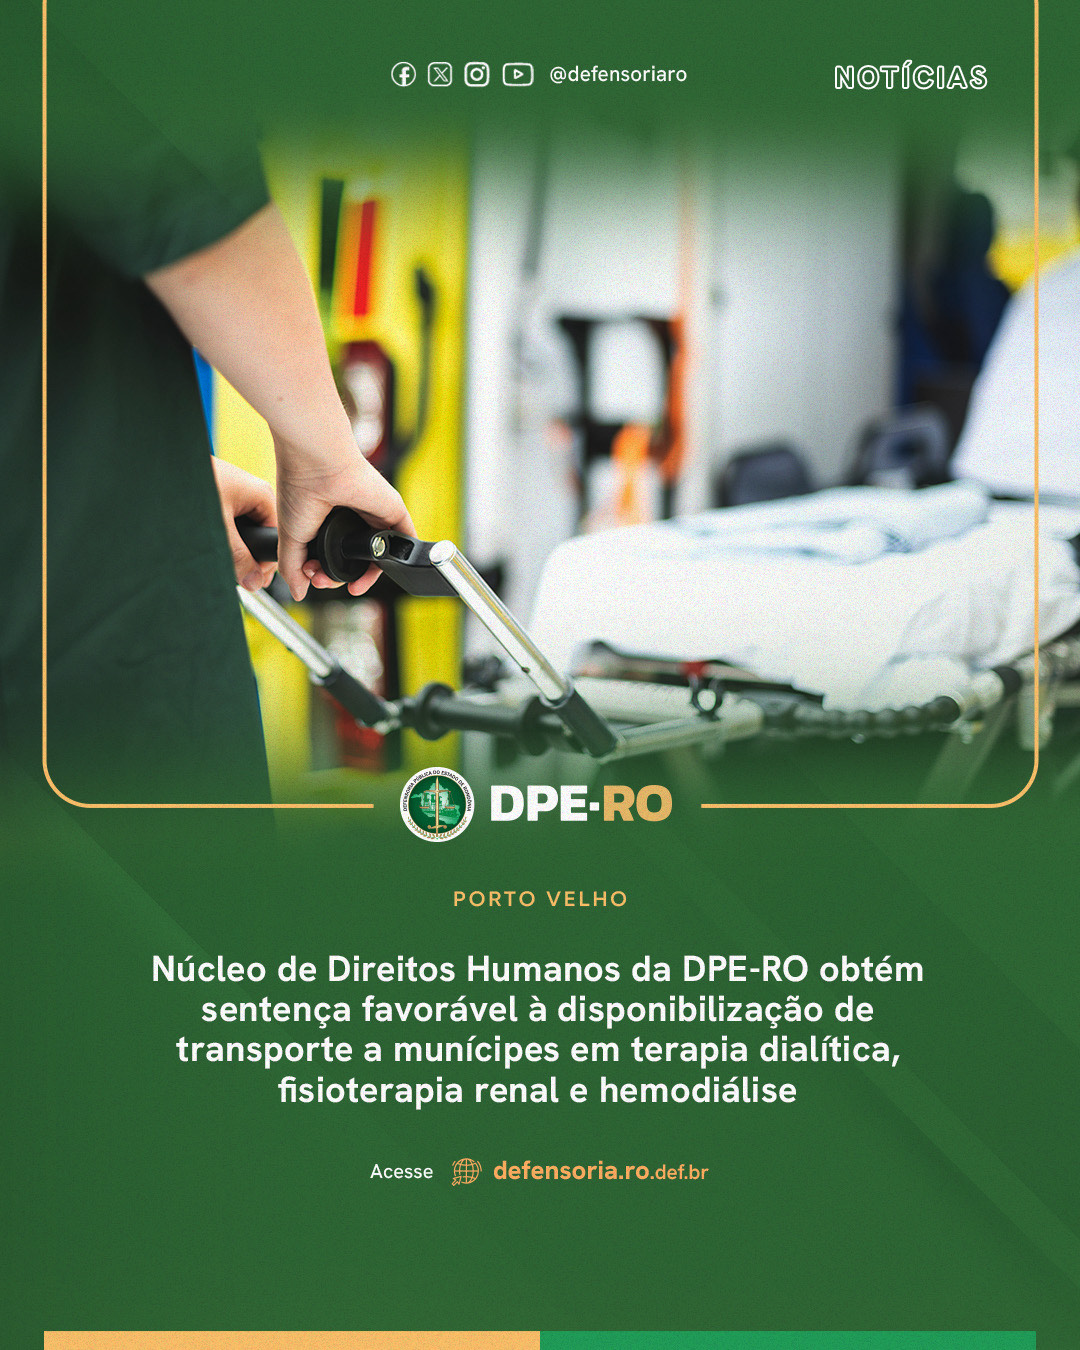 Porto Velho: Núcleo de Direitos Humanos da DPE-RO obtém sentença favorável à disponibilização de transporte a munícipes em terapia dialítica, fisioterapia renal e hemodiálise